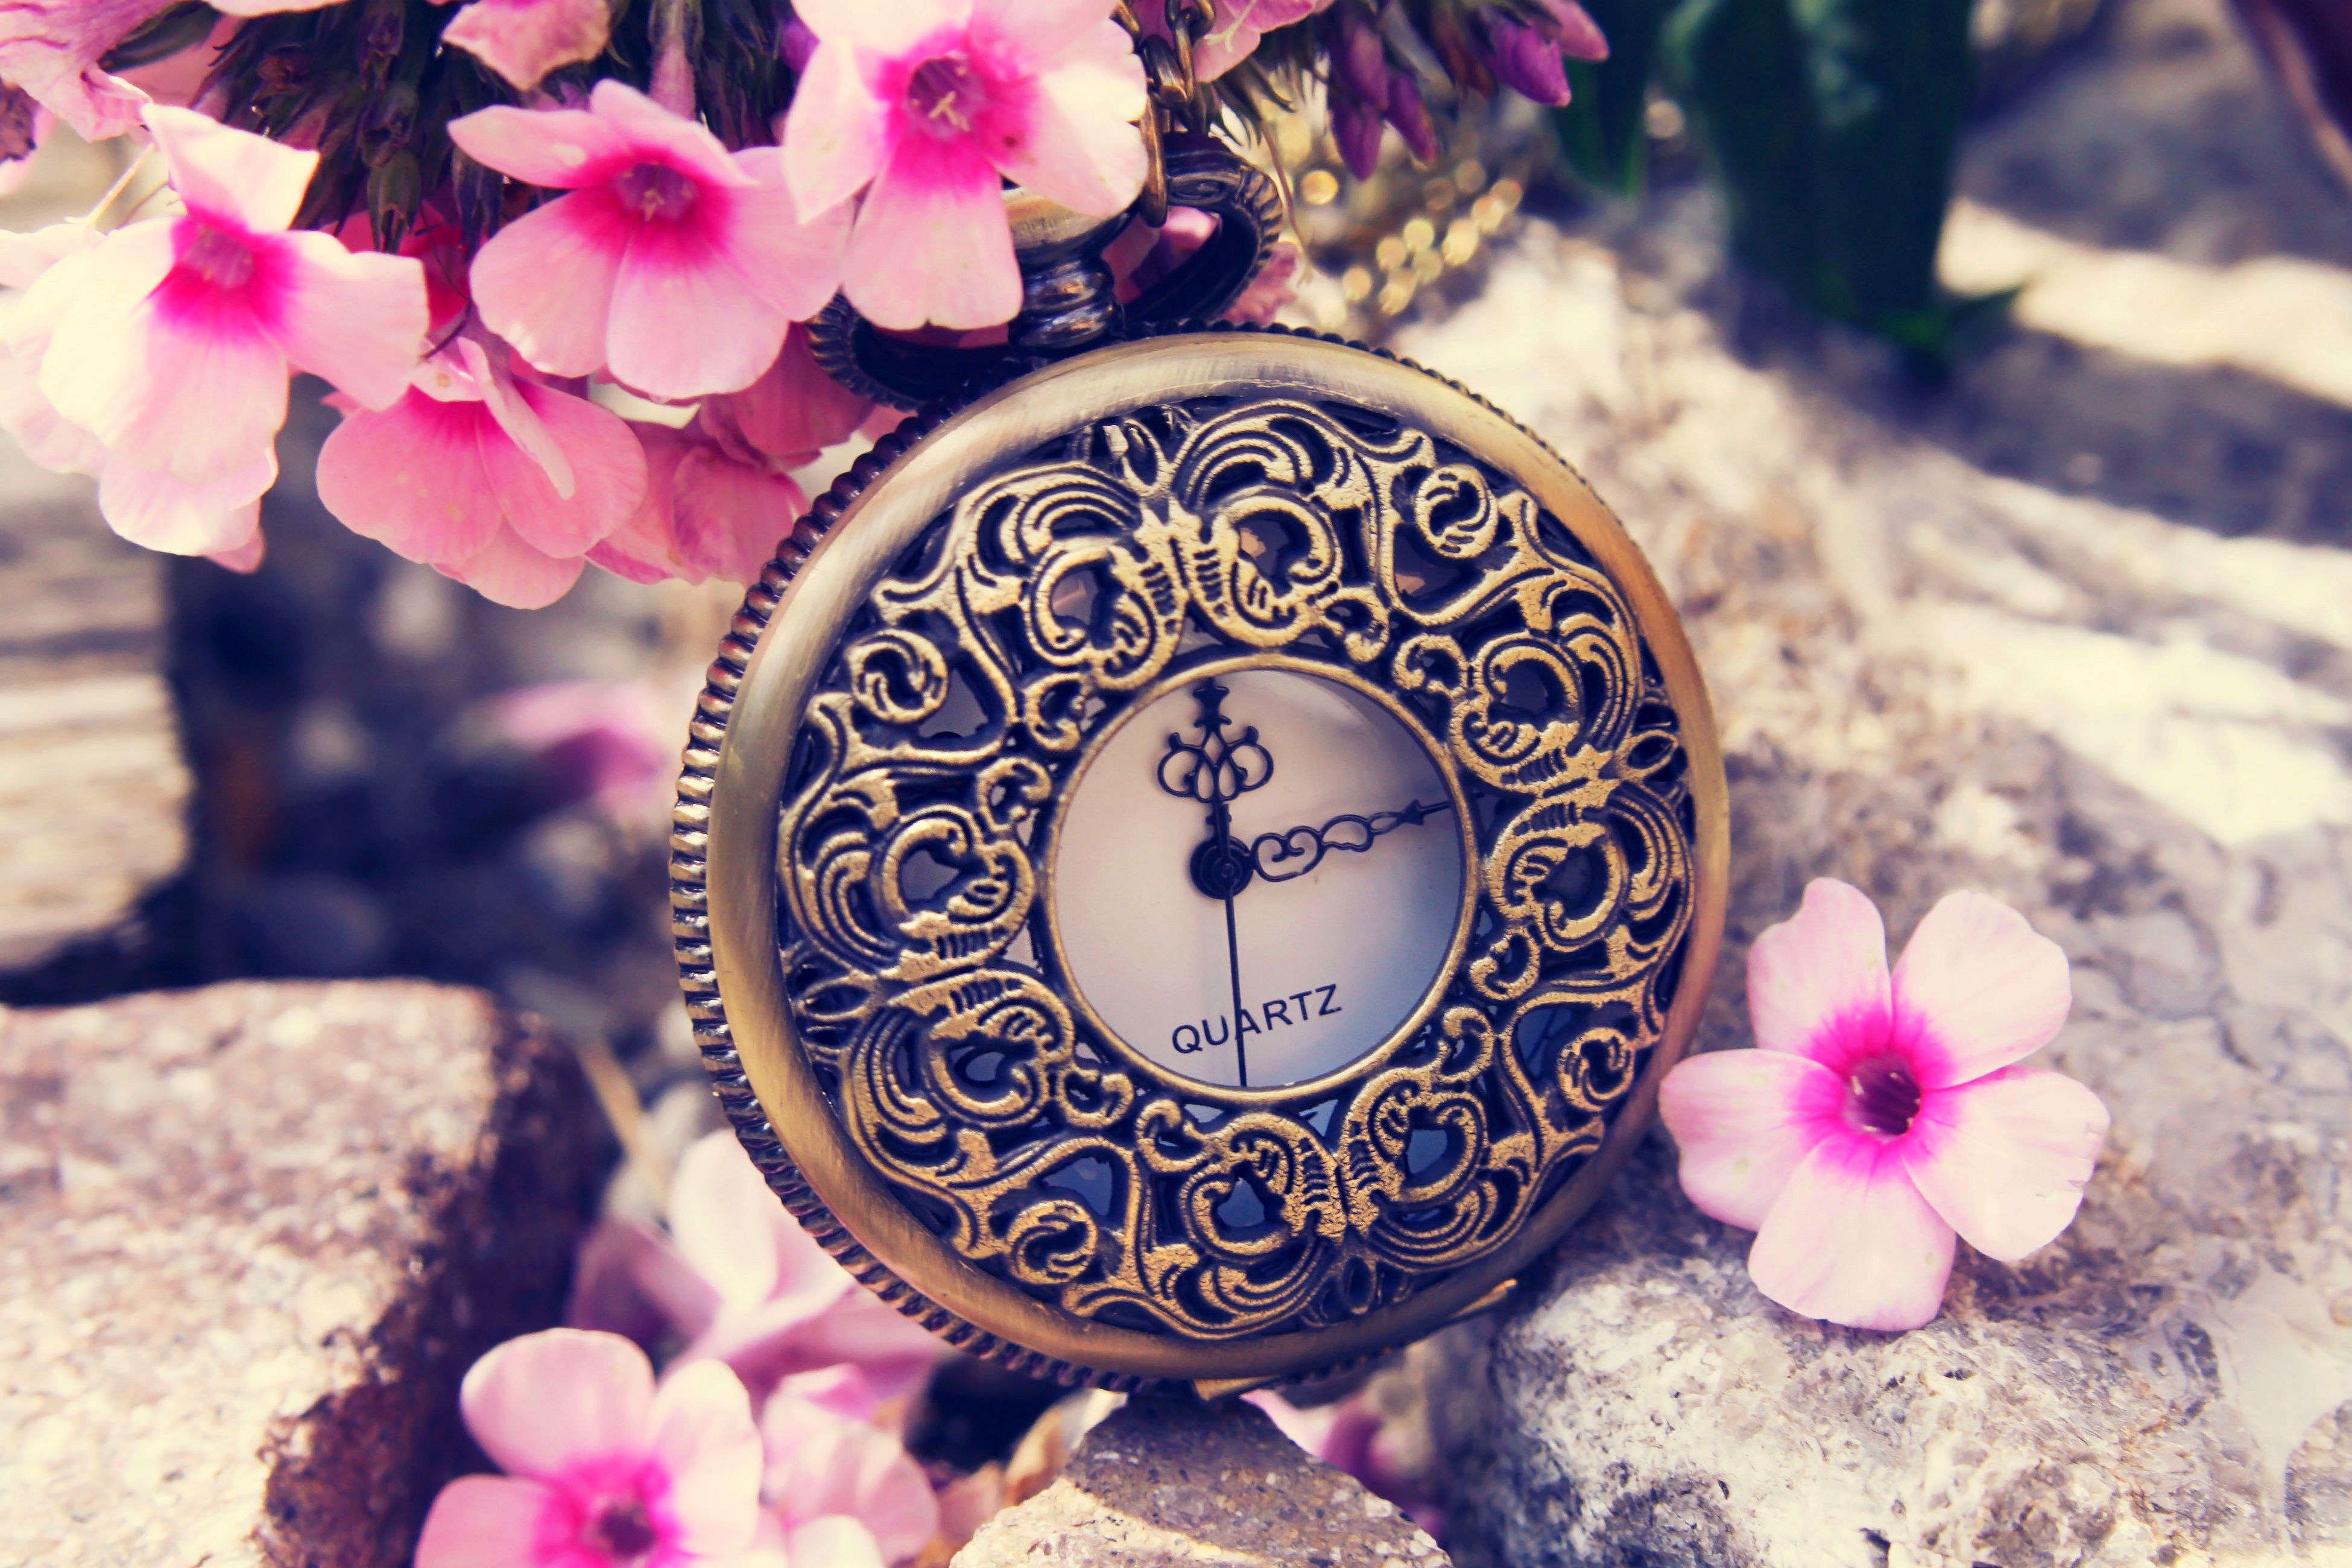 Фото обоев на часы. Красивые часы. Часы на красивом фоне. Красивые часы с цветами. Красивая картина с часами.